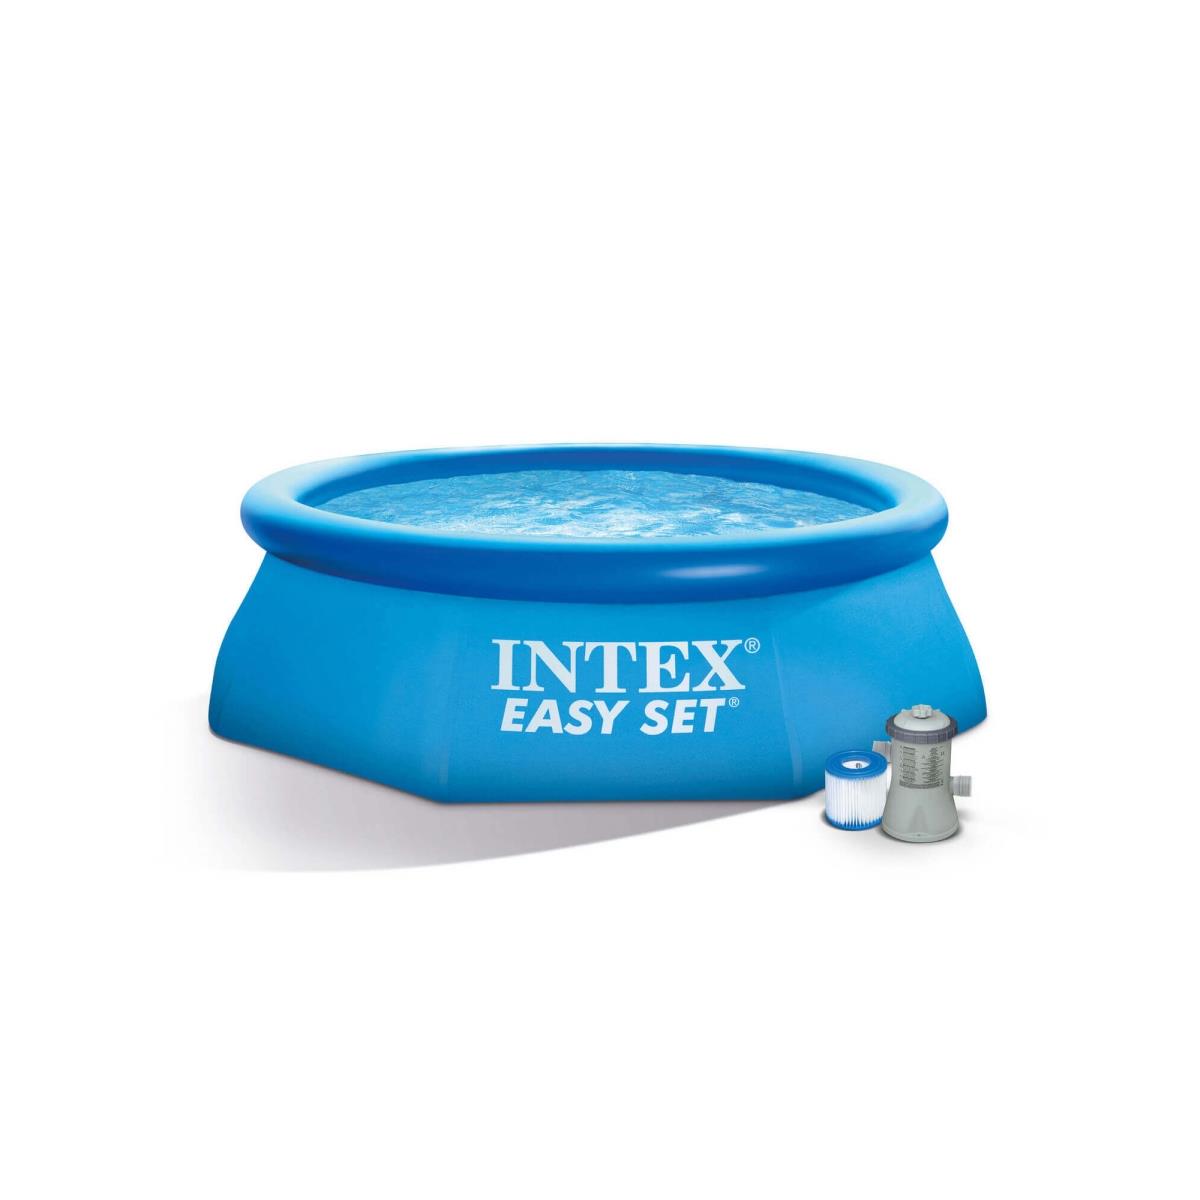 Бассейн Easy Set 2.44 х 0,61 м + фильтр-насос (28108) INTEX бассейн надувной intex 244х61 см easy set 28108np фильтр насос 1942 л